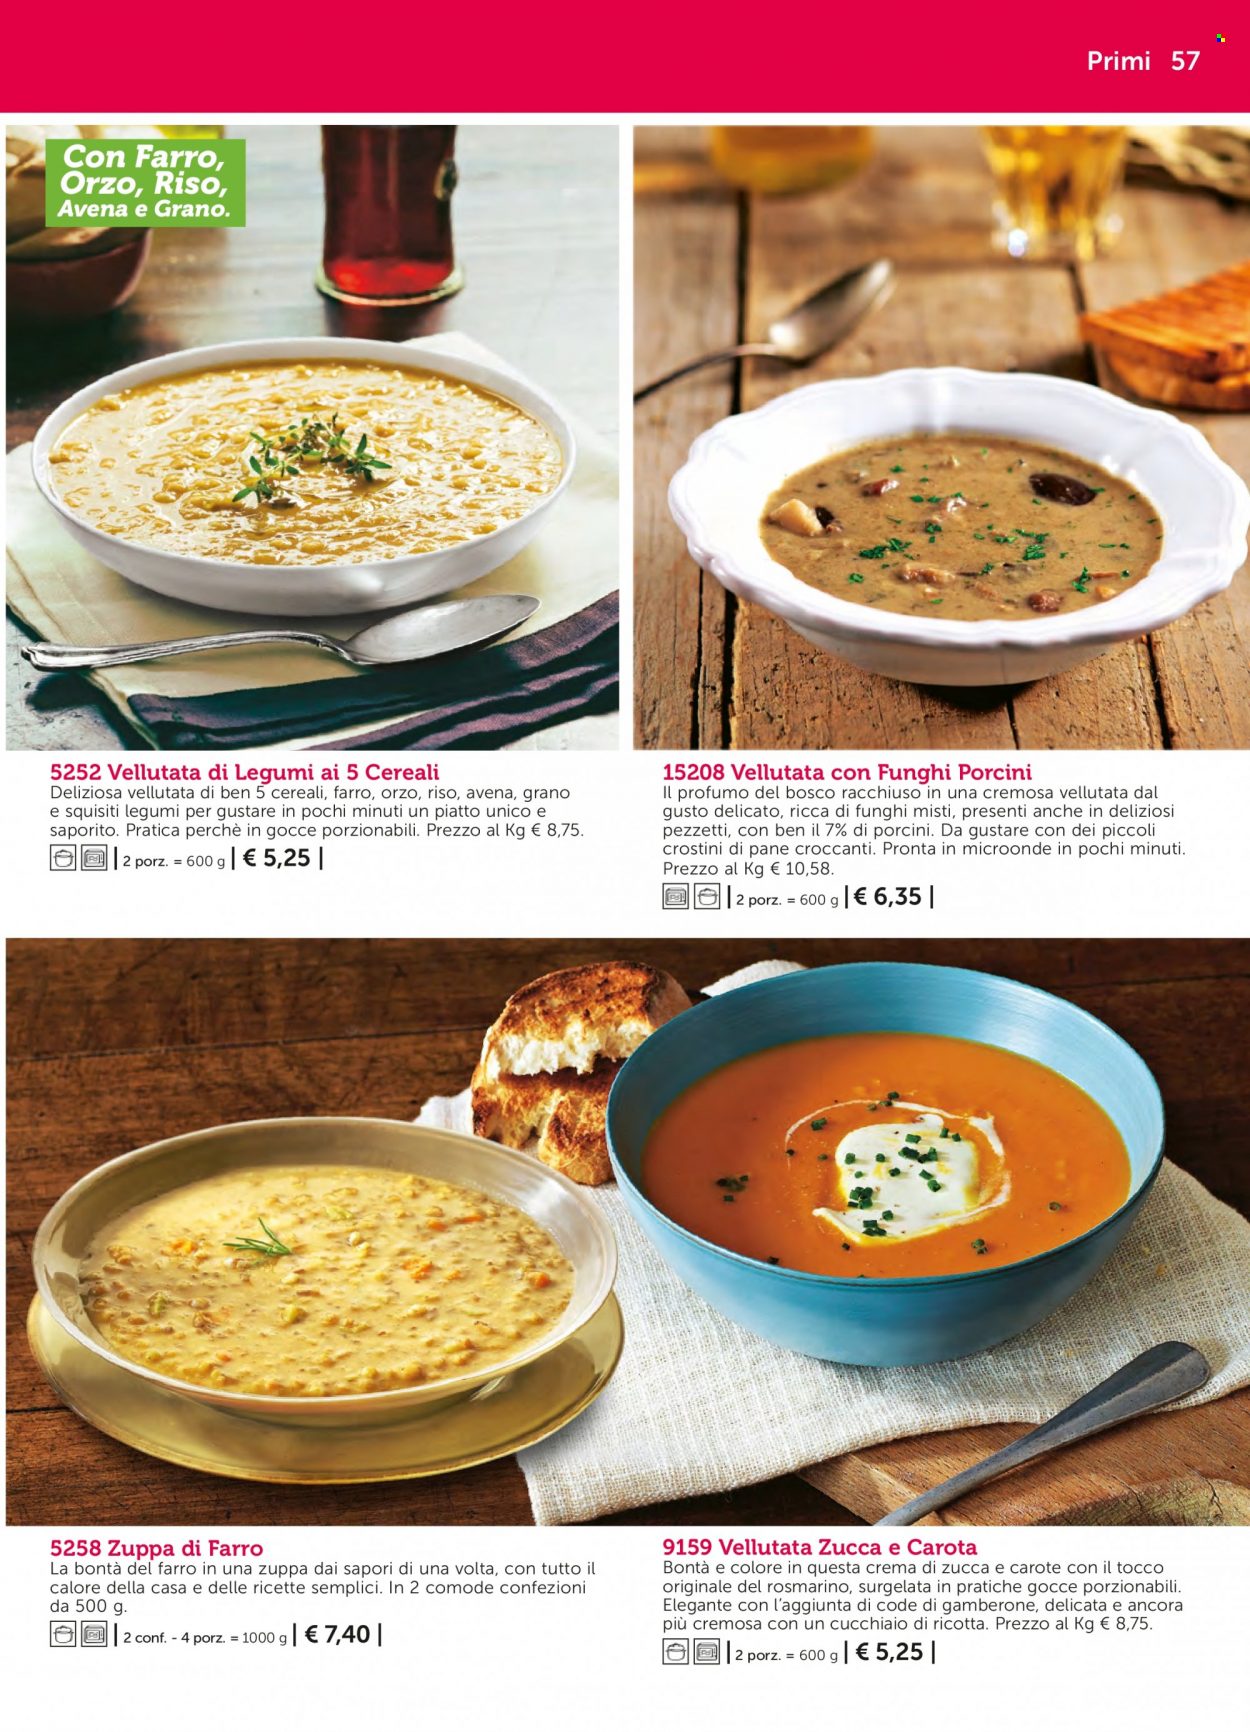 thumbnail - Volantino Bofrost - Prodotti in offerta - zuppa, vellutata, crema di zucca, pane. Pagina 57.